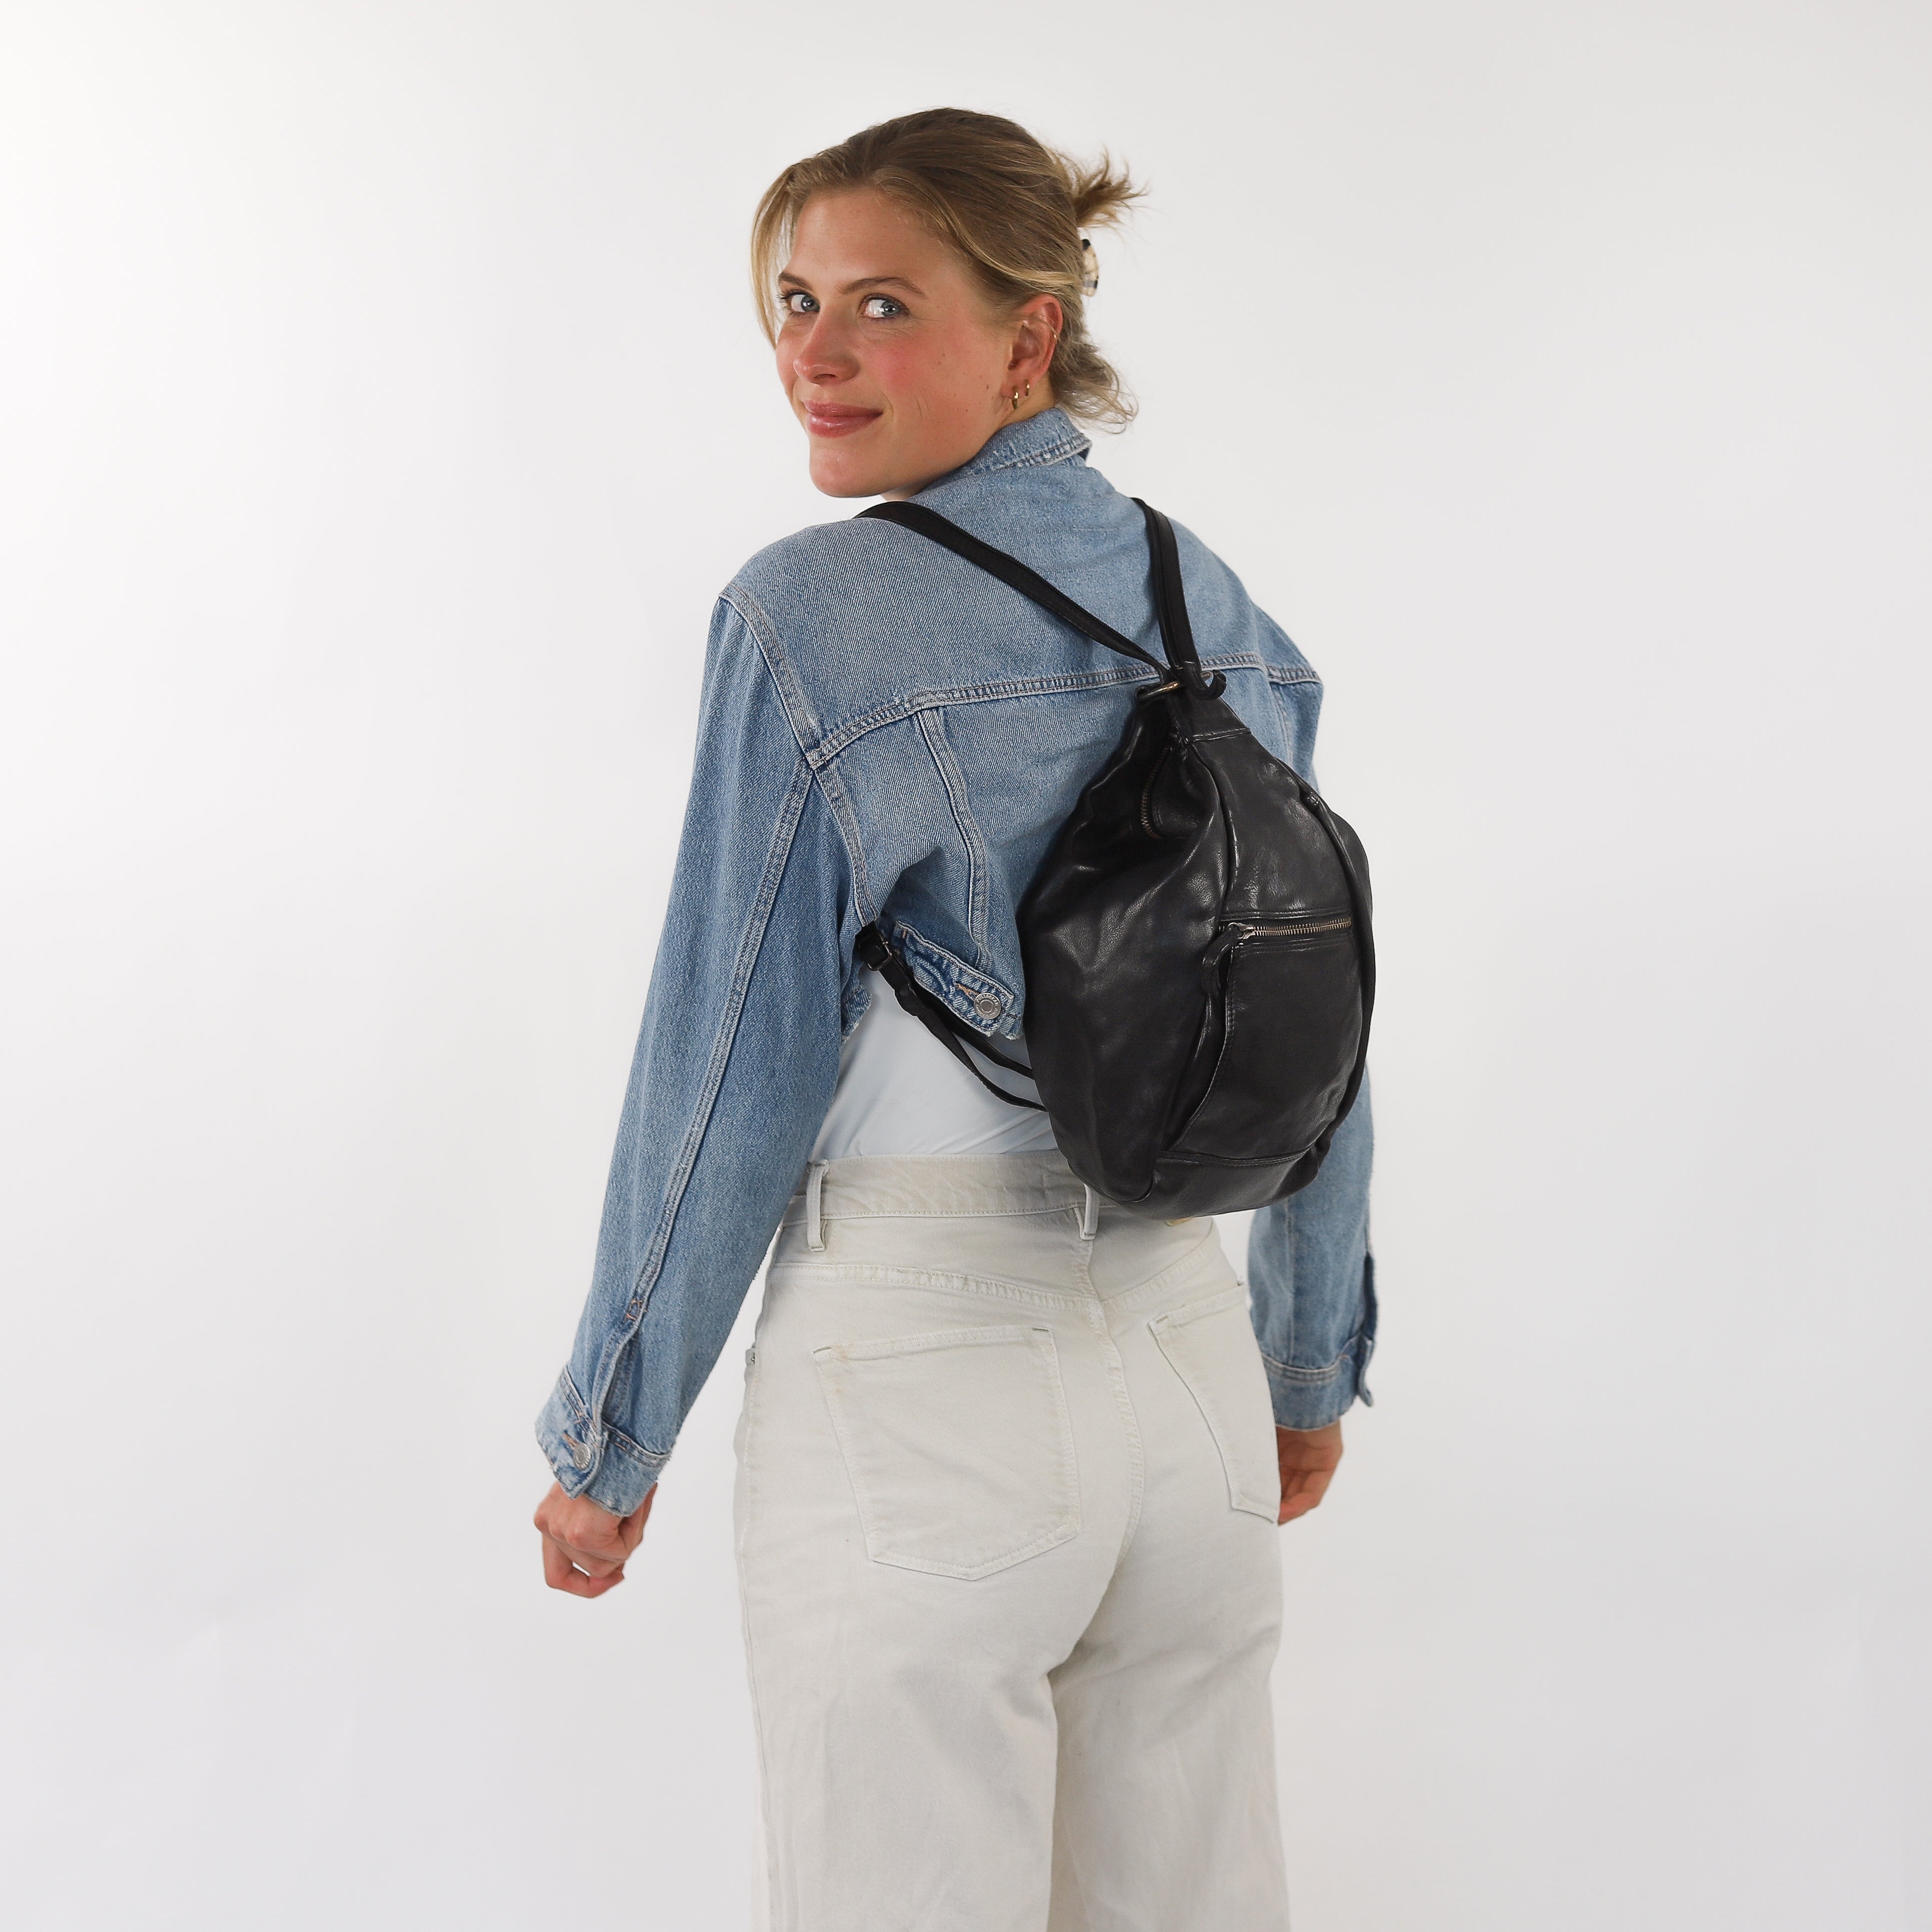 Backpack 'Hannie' beige